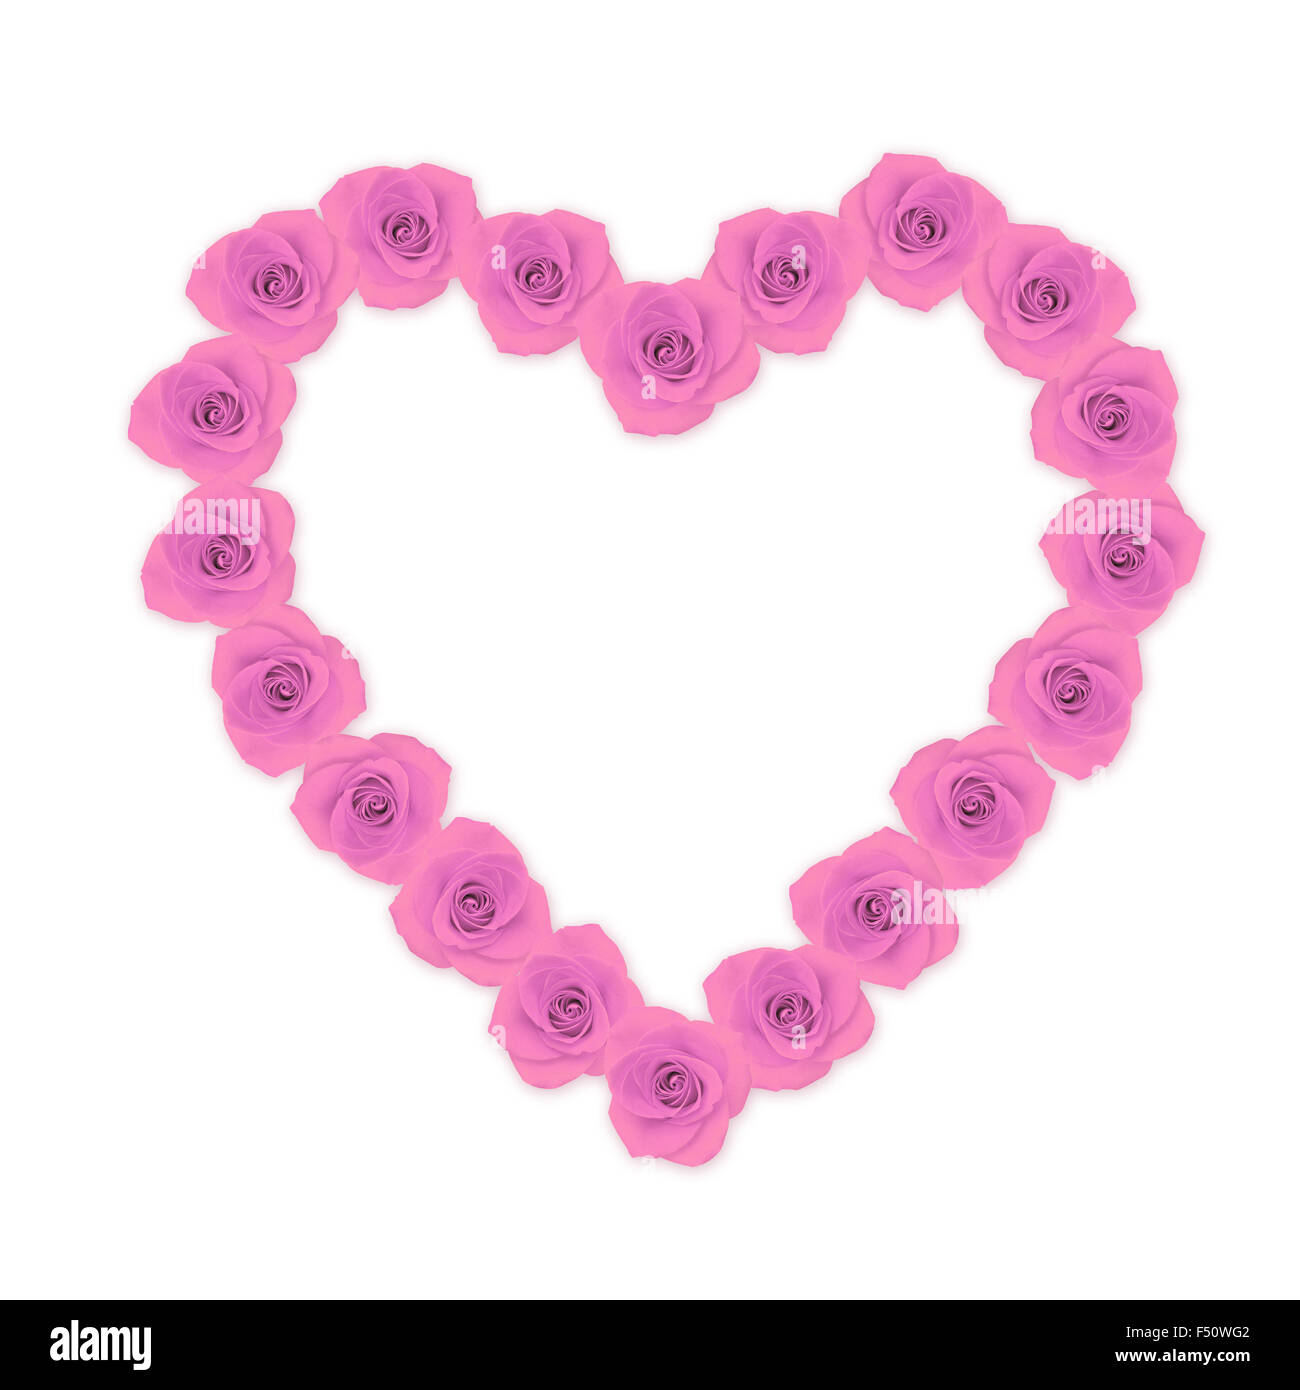 Décorations comestibles en forme de coeur rose (x16)